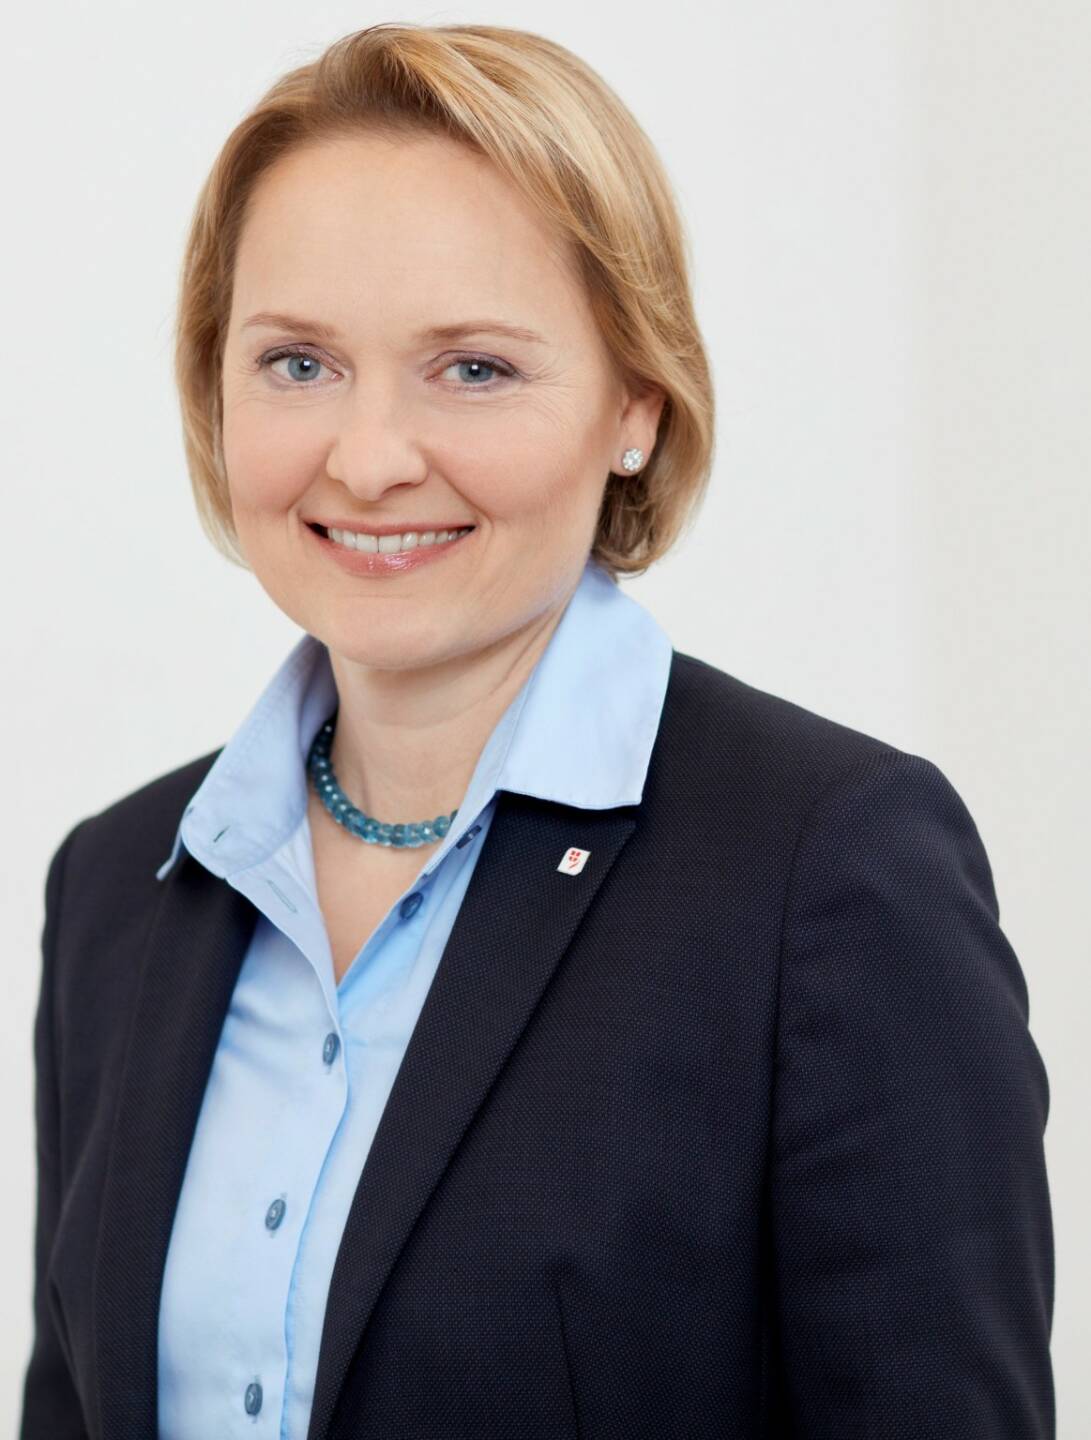 Liane Hirner wird neues Vorstandsmitglied der Vienna Insurance Group (VIG). Ab 1. Juli 2018 wird sie die Funktion des Finanzvorstandes übernehmen. Bild: VIG